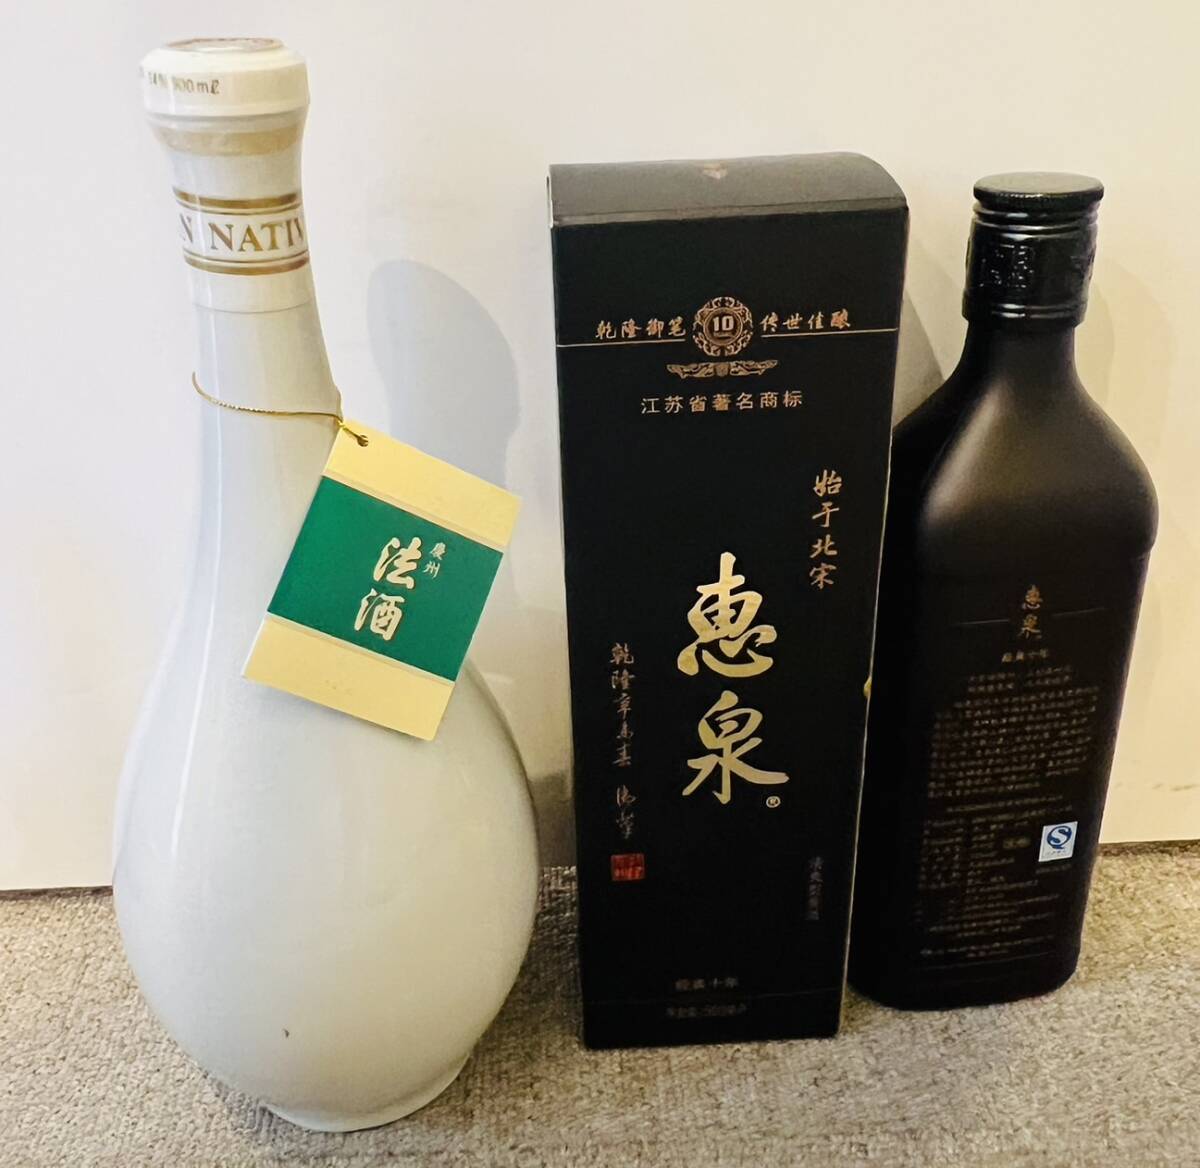 [KJ-24.1SK] sake . summarize Korea . sake . Izumi .. law sake wine fruits sake sake collection that time thing collector Coca * Cola extra attaching storage goods 